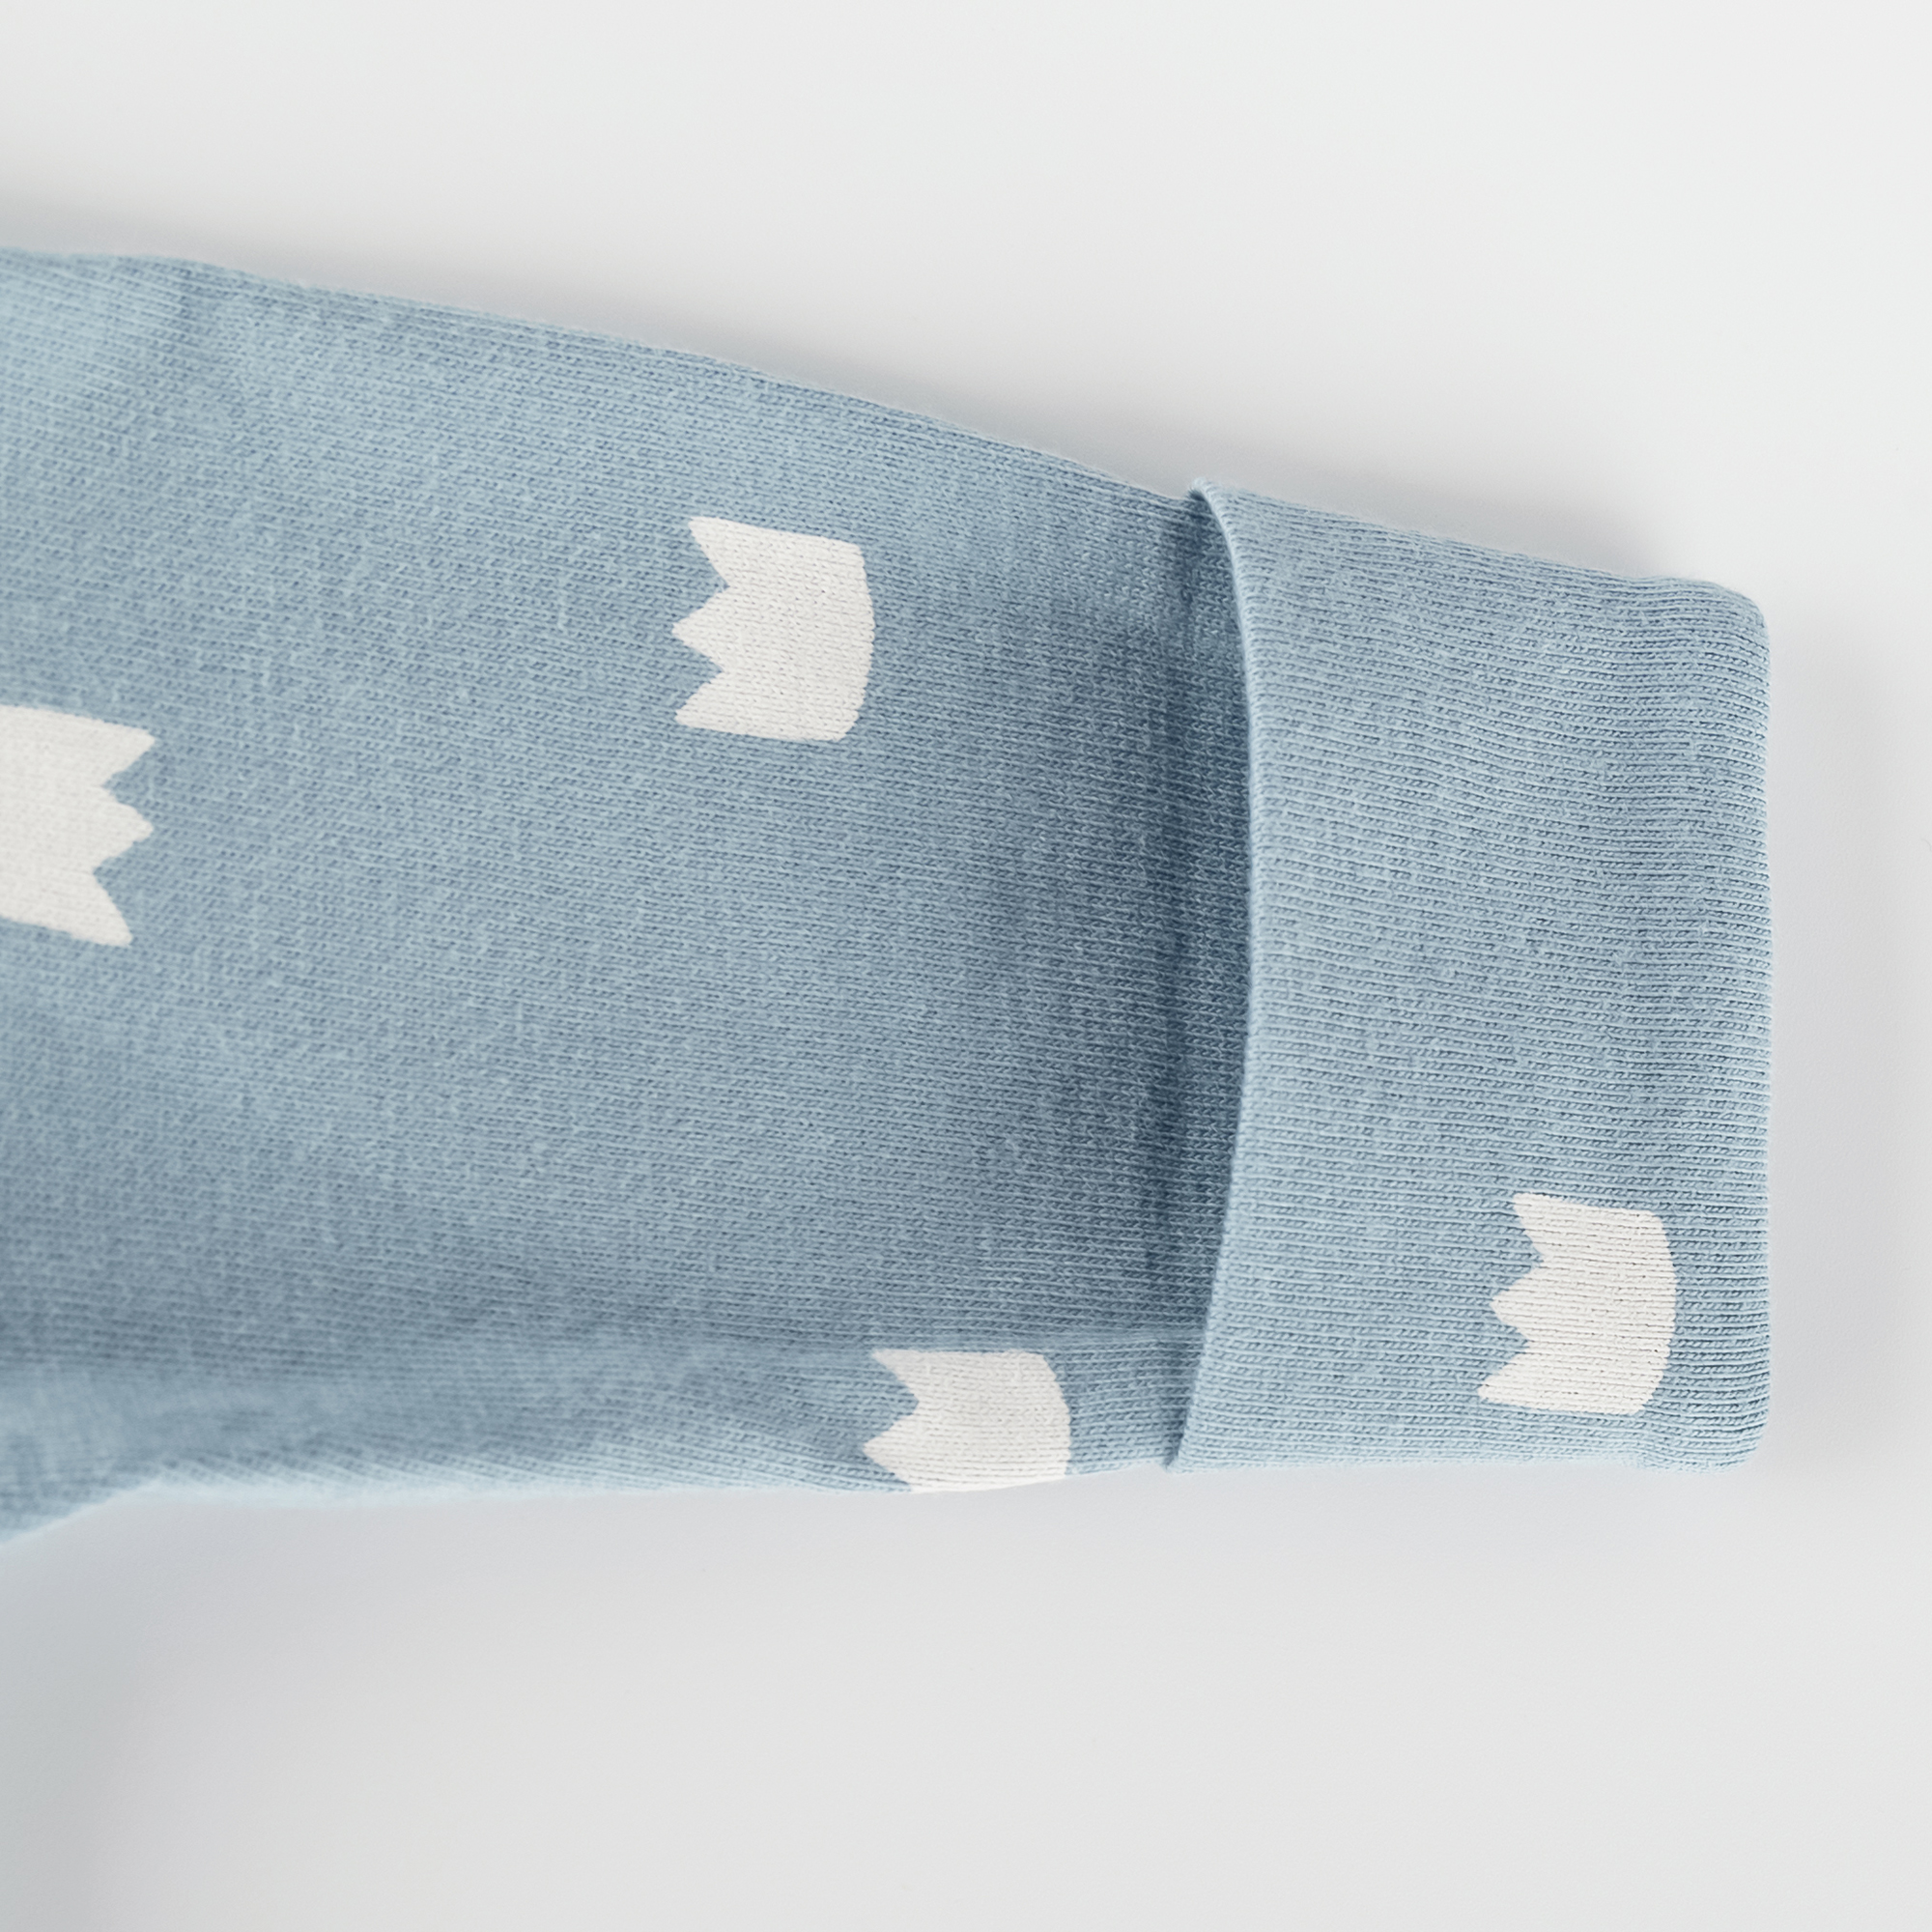 Newborn baby footed onesie romper blue, foldover mittens